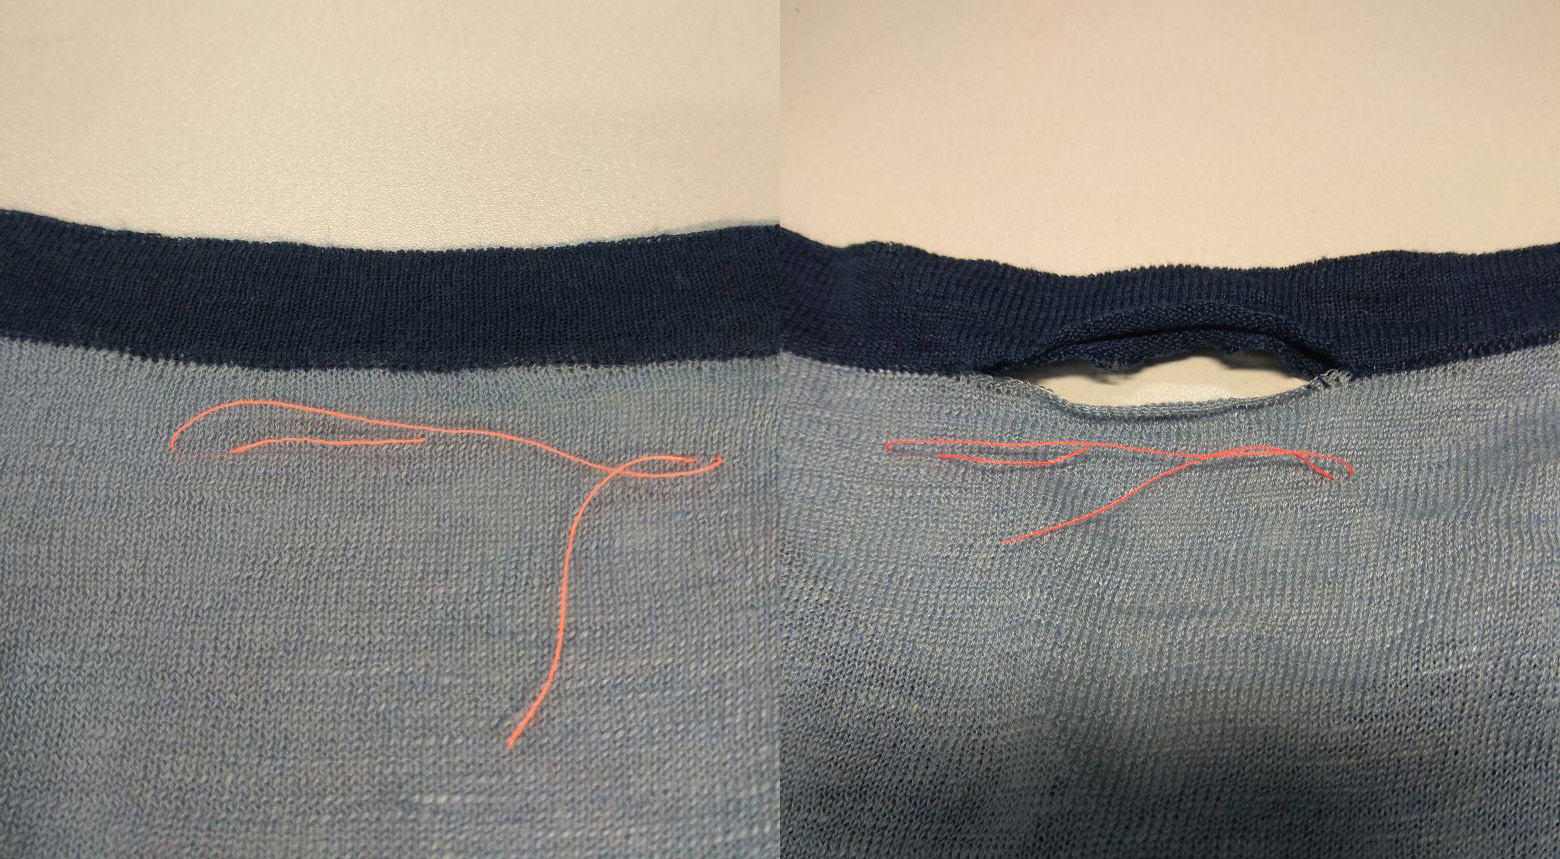 Как убрать затяжки на одежде: инструкция по устранению зацепок на синтетике, трикотаже, джинсах